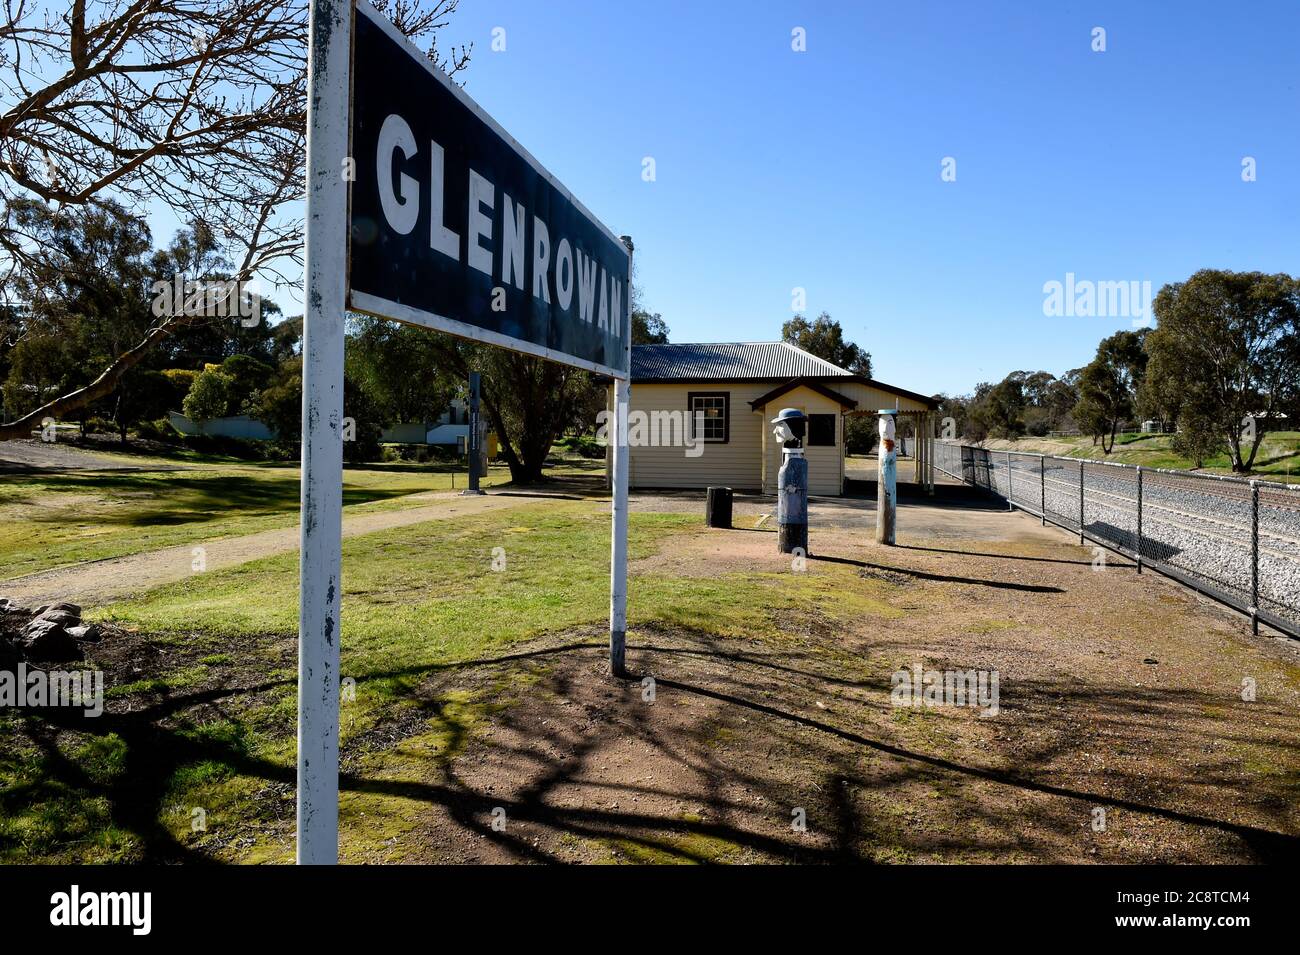 Glenrower, Victoria. Glenrowan Bahnhofsplattform mit Bahnhofschild in Richtung Bahnhofsgebäude, die Holzstatuen markieren die Position der Polizei. Stockfoto